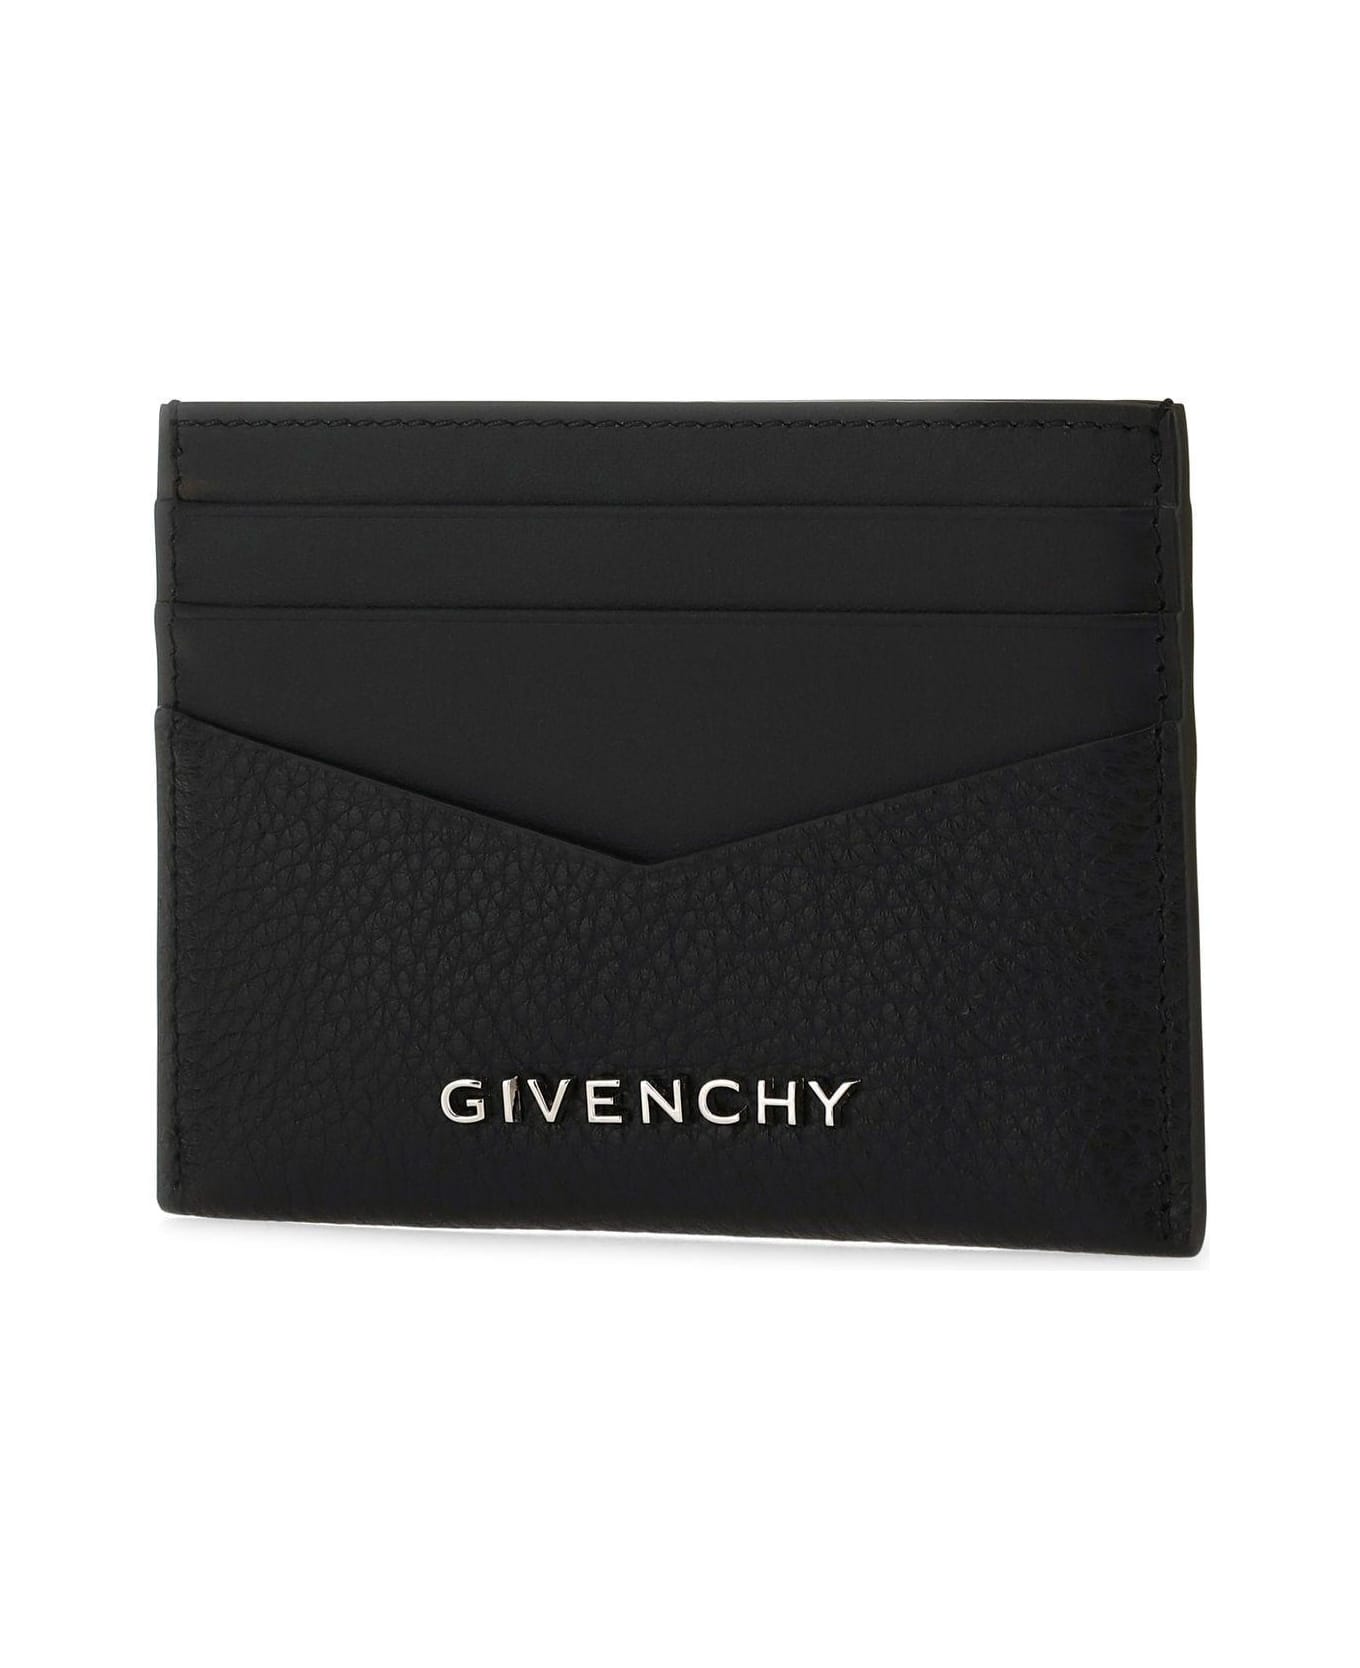 Givenchy Black Leather Card Holder - Black